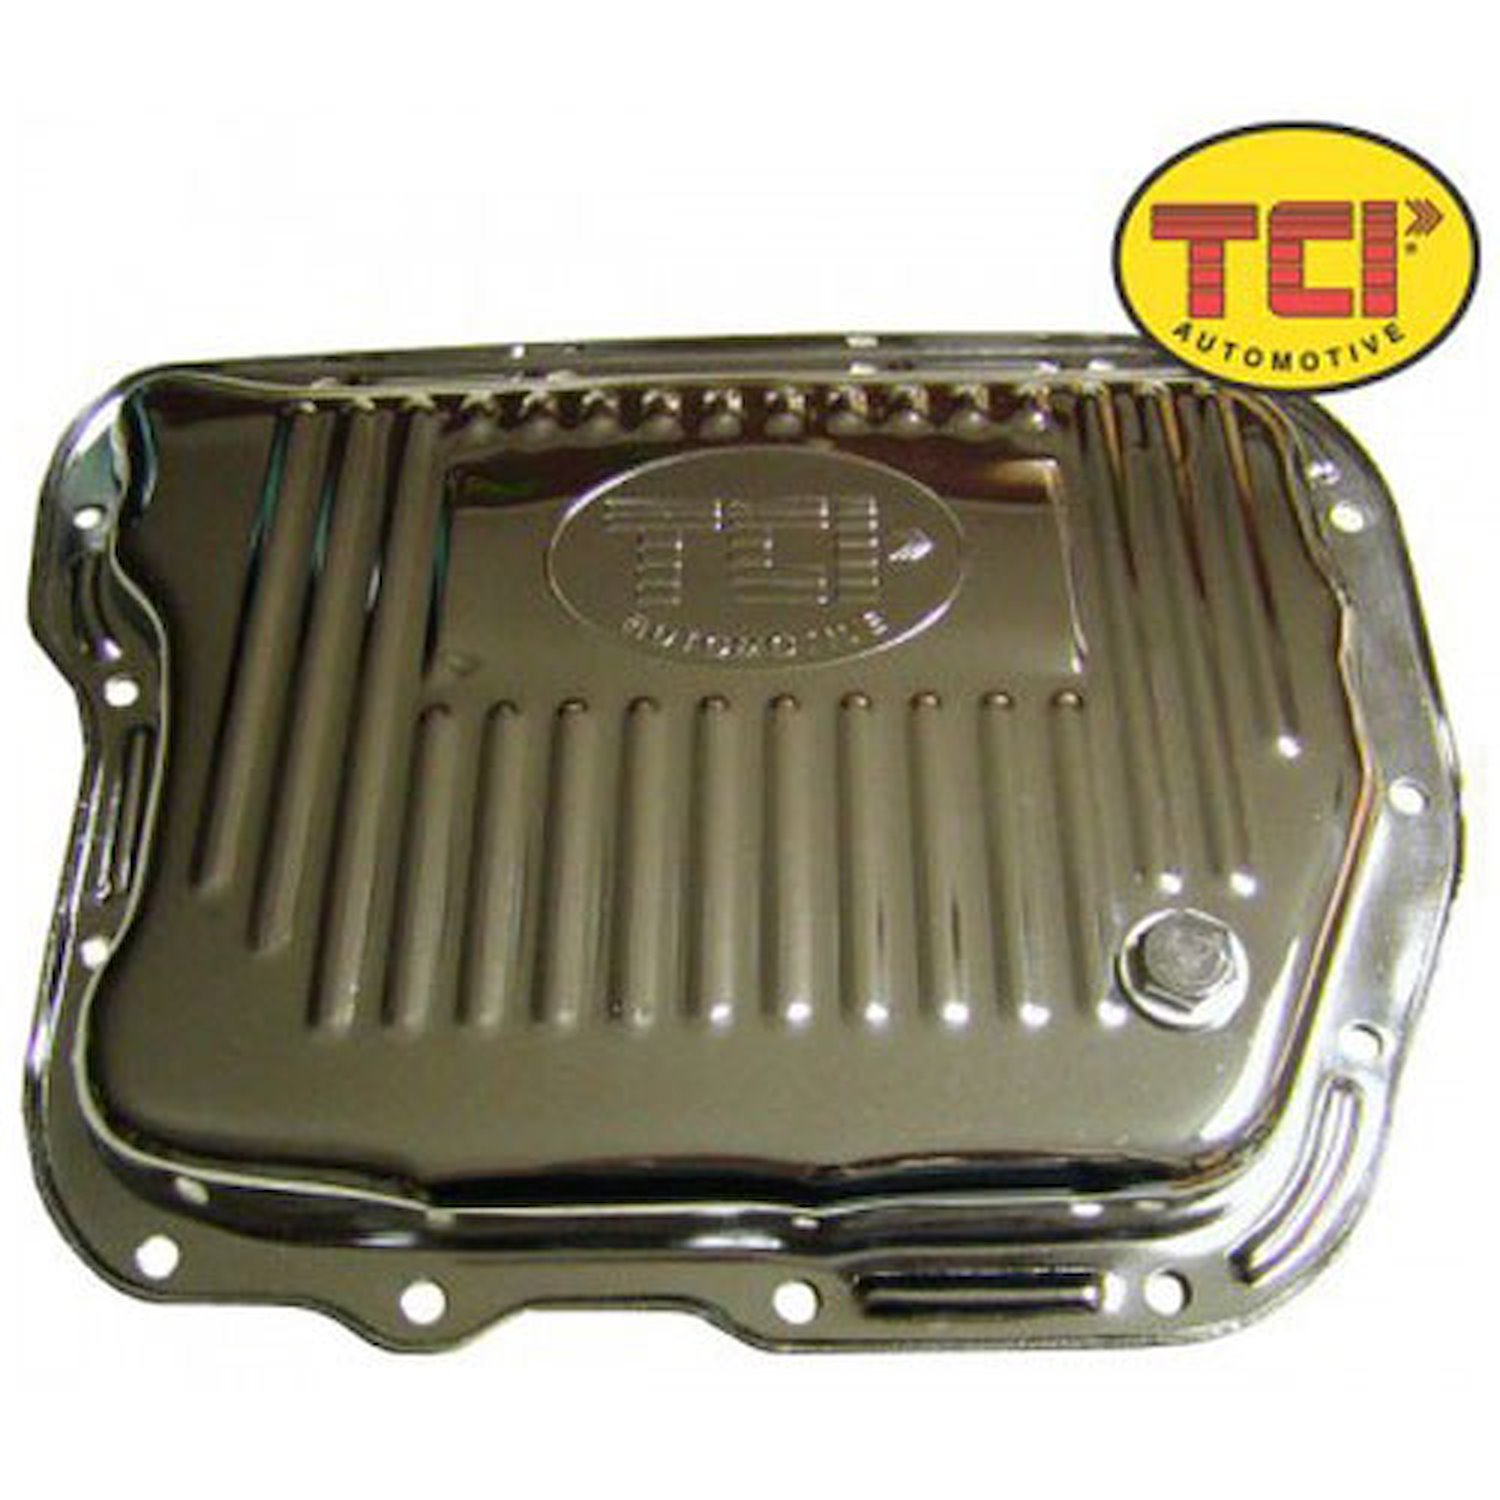 Chrome-Plated Steel Transmission Pan Chrysler Torqueflite 727